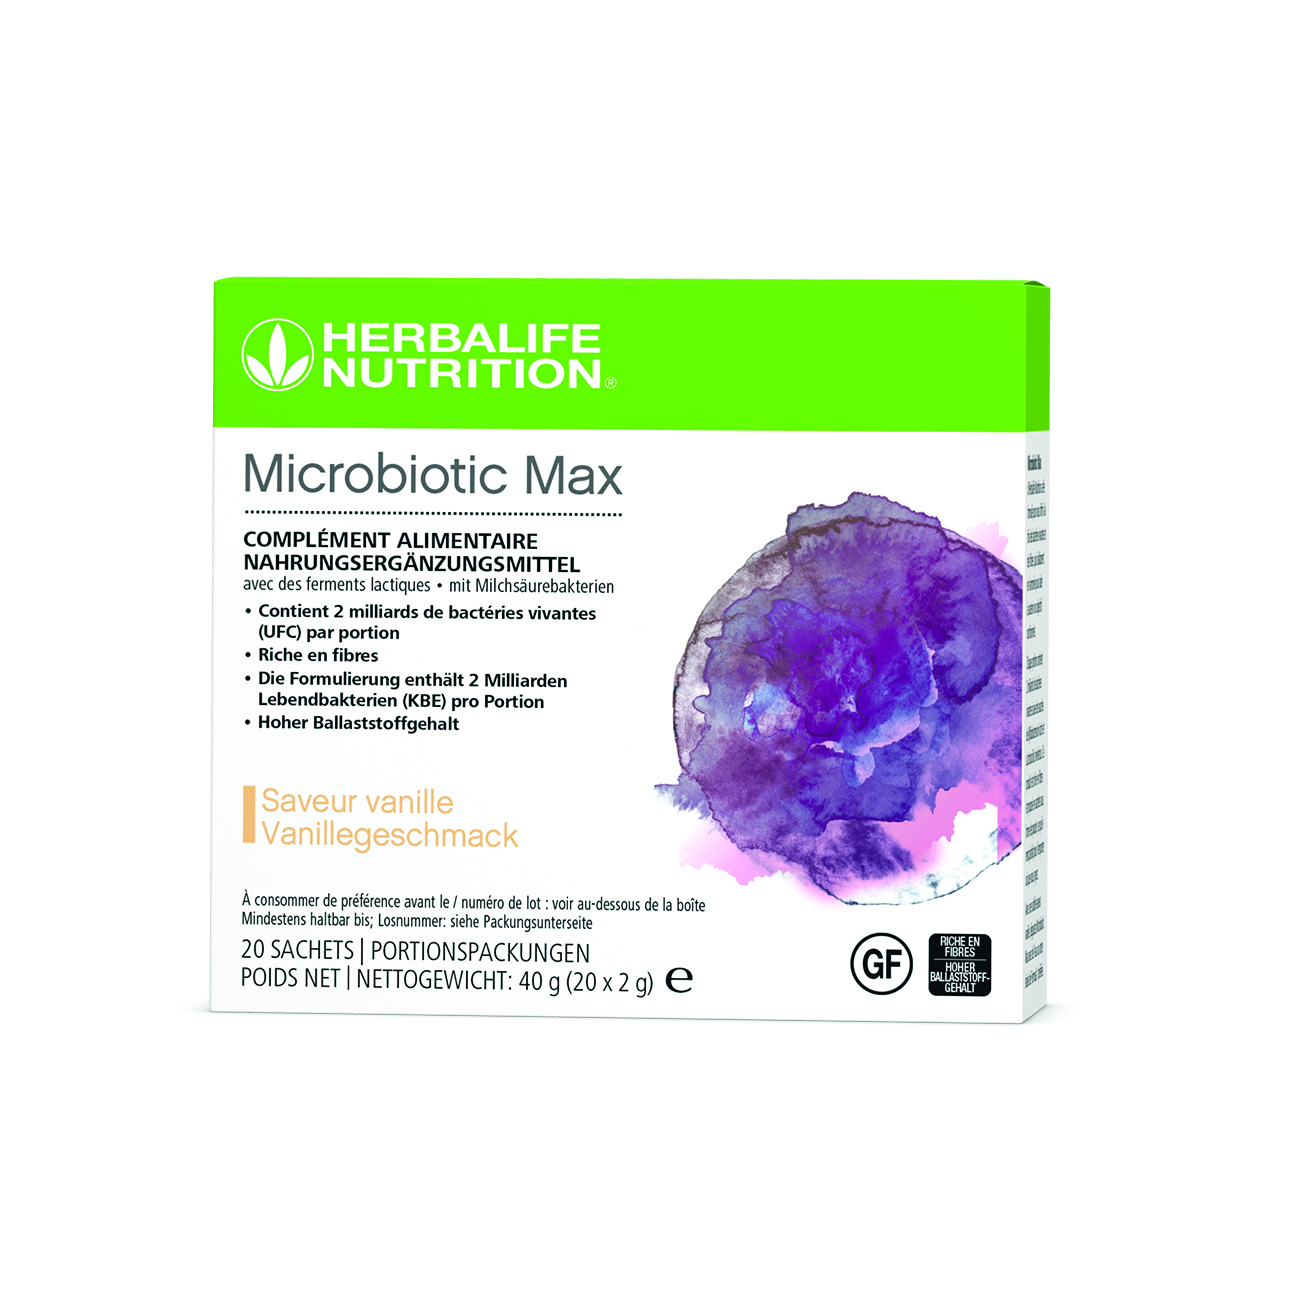 Microbiotic Max est un complement alimentaire en poudre formule avec des probiotiques et des fibres prebiotiques.